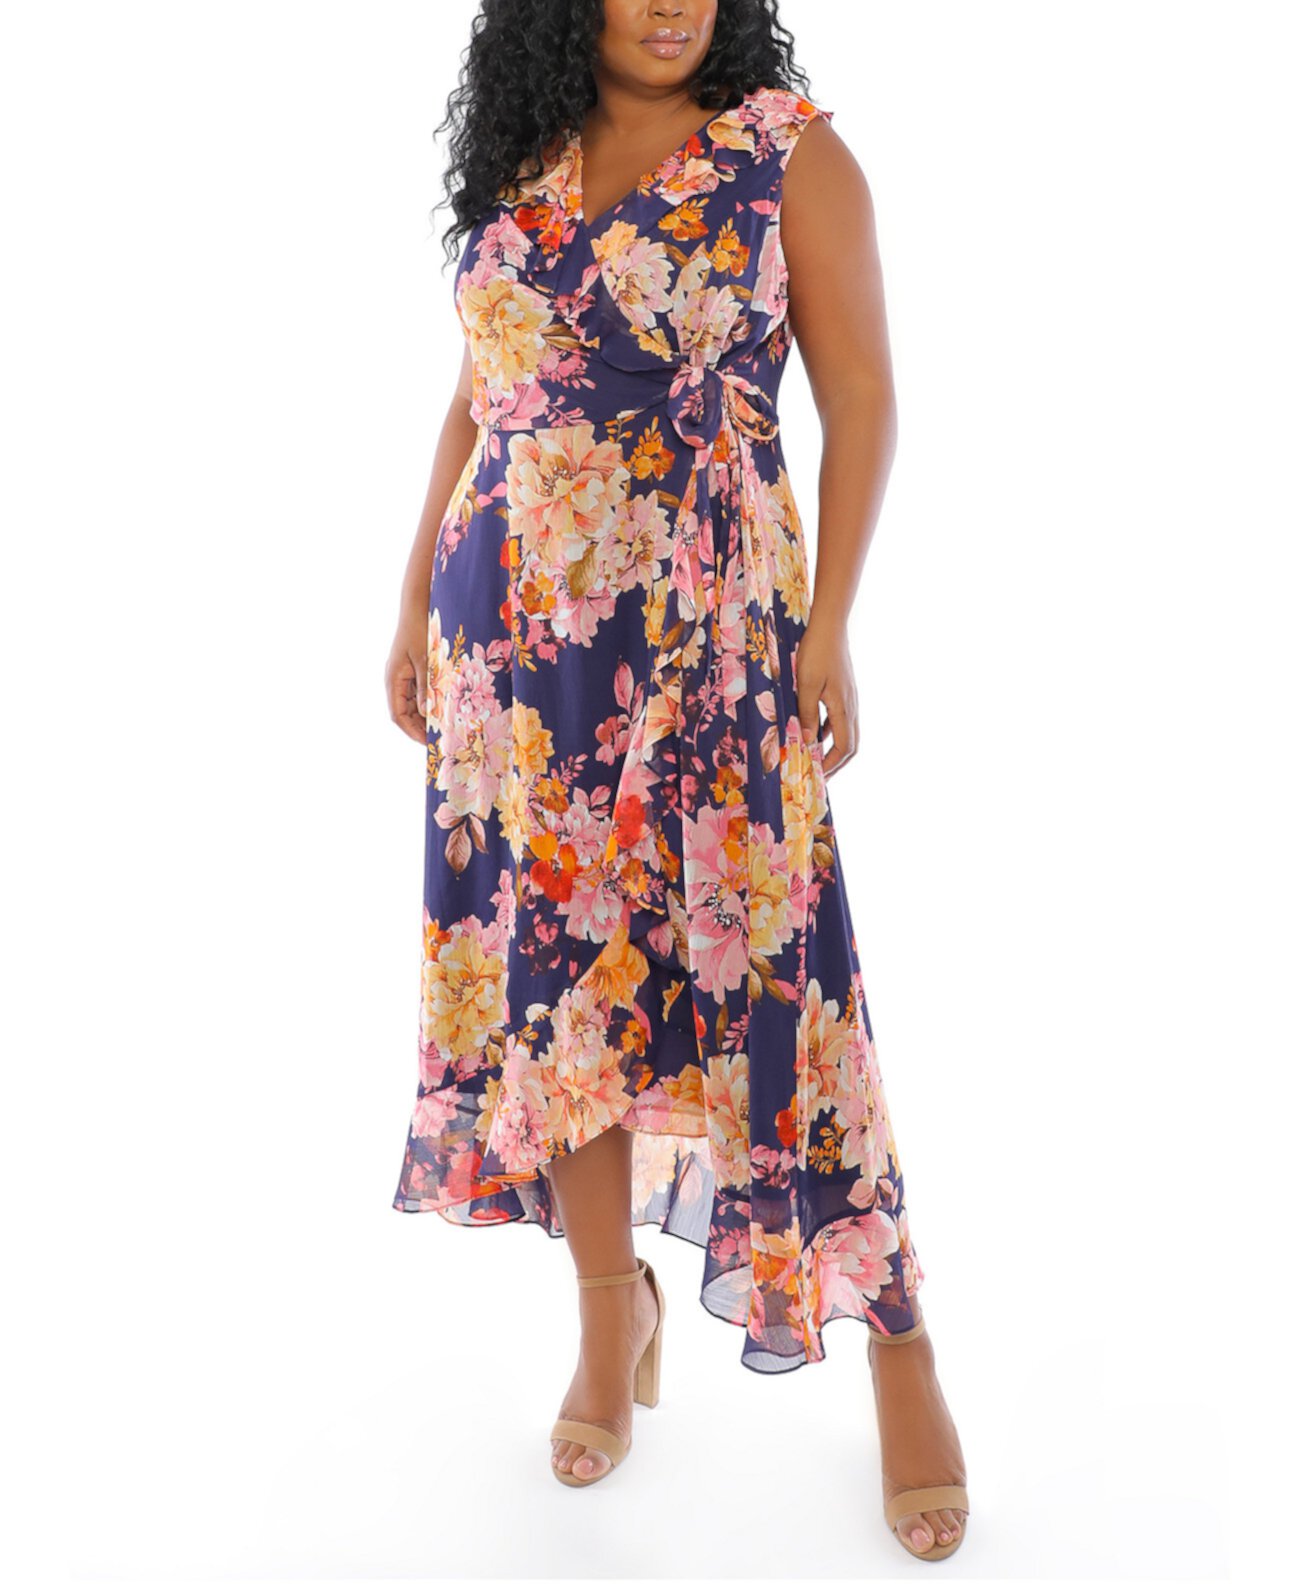 Макси-платье больших размеров с цветочным принтом London Times